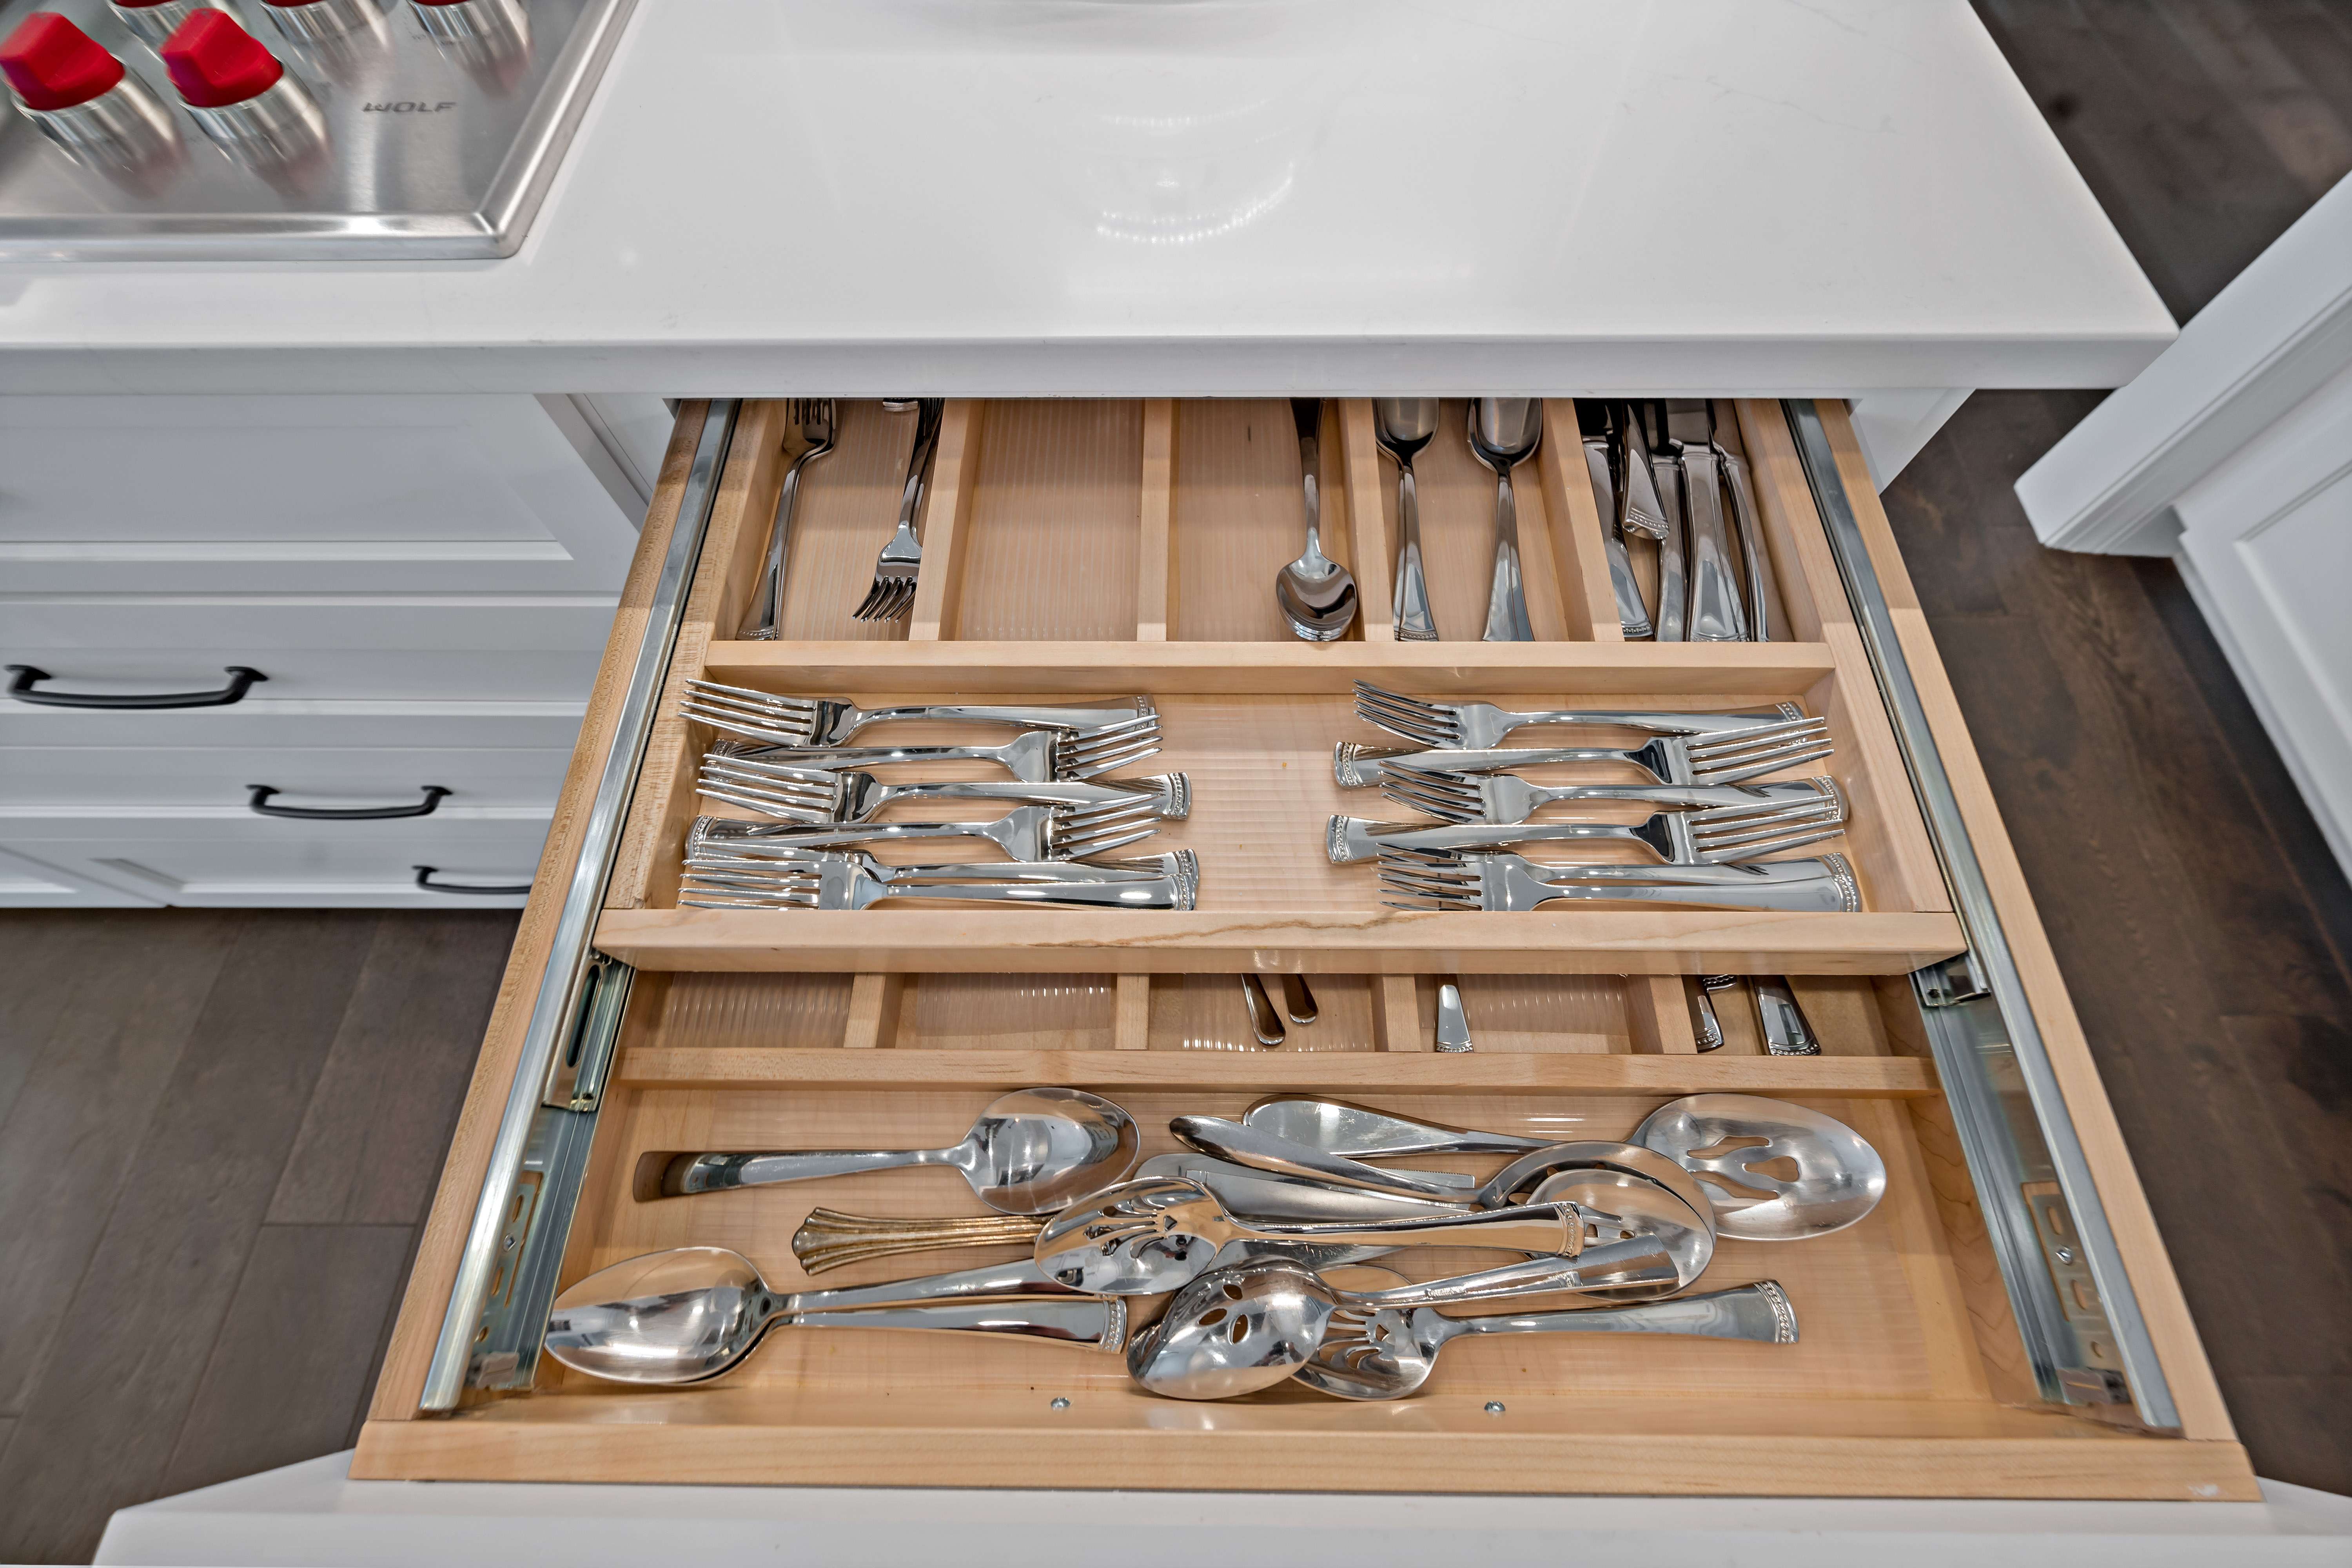 Silverware organized in kitchen drawer